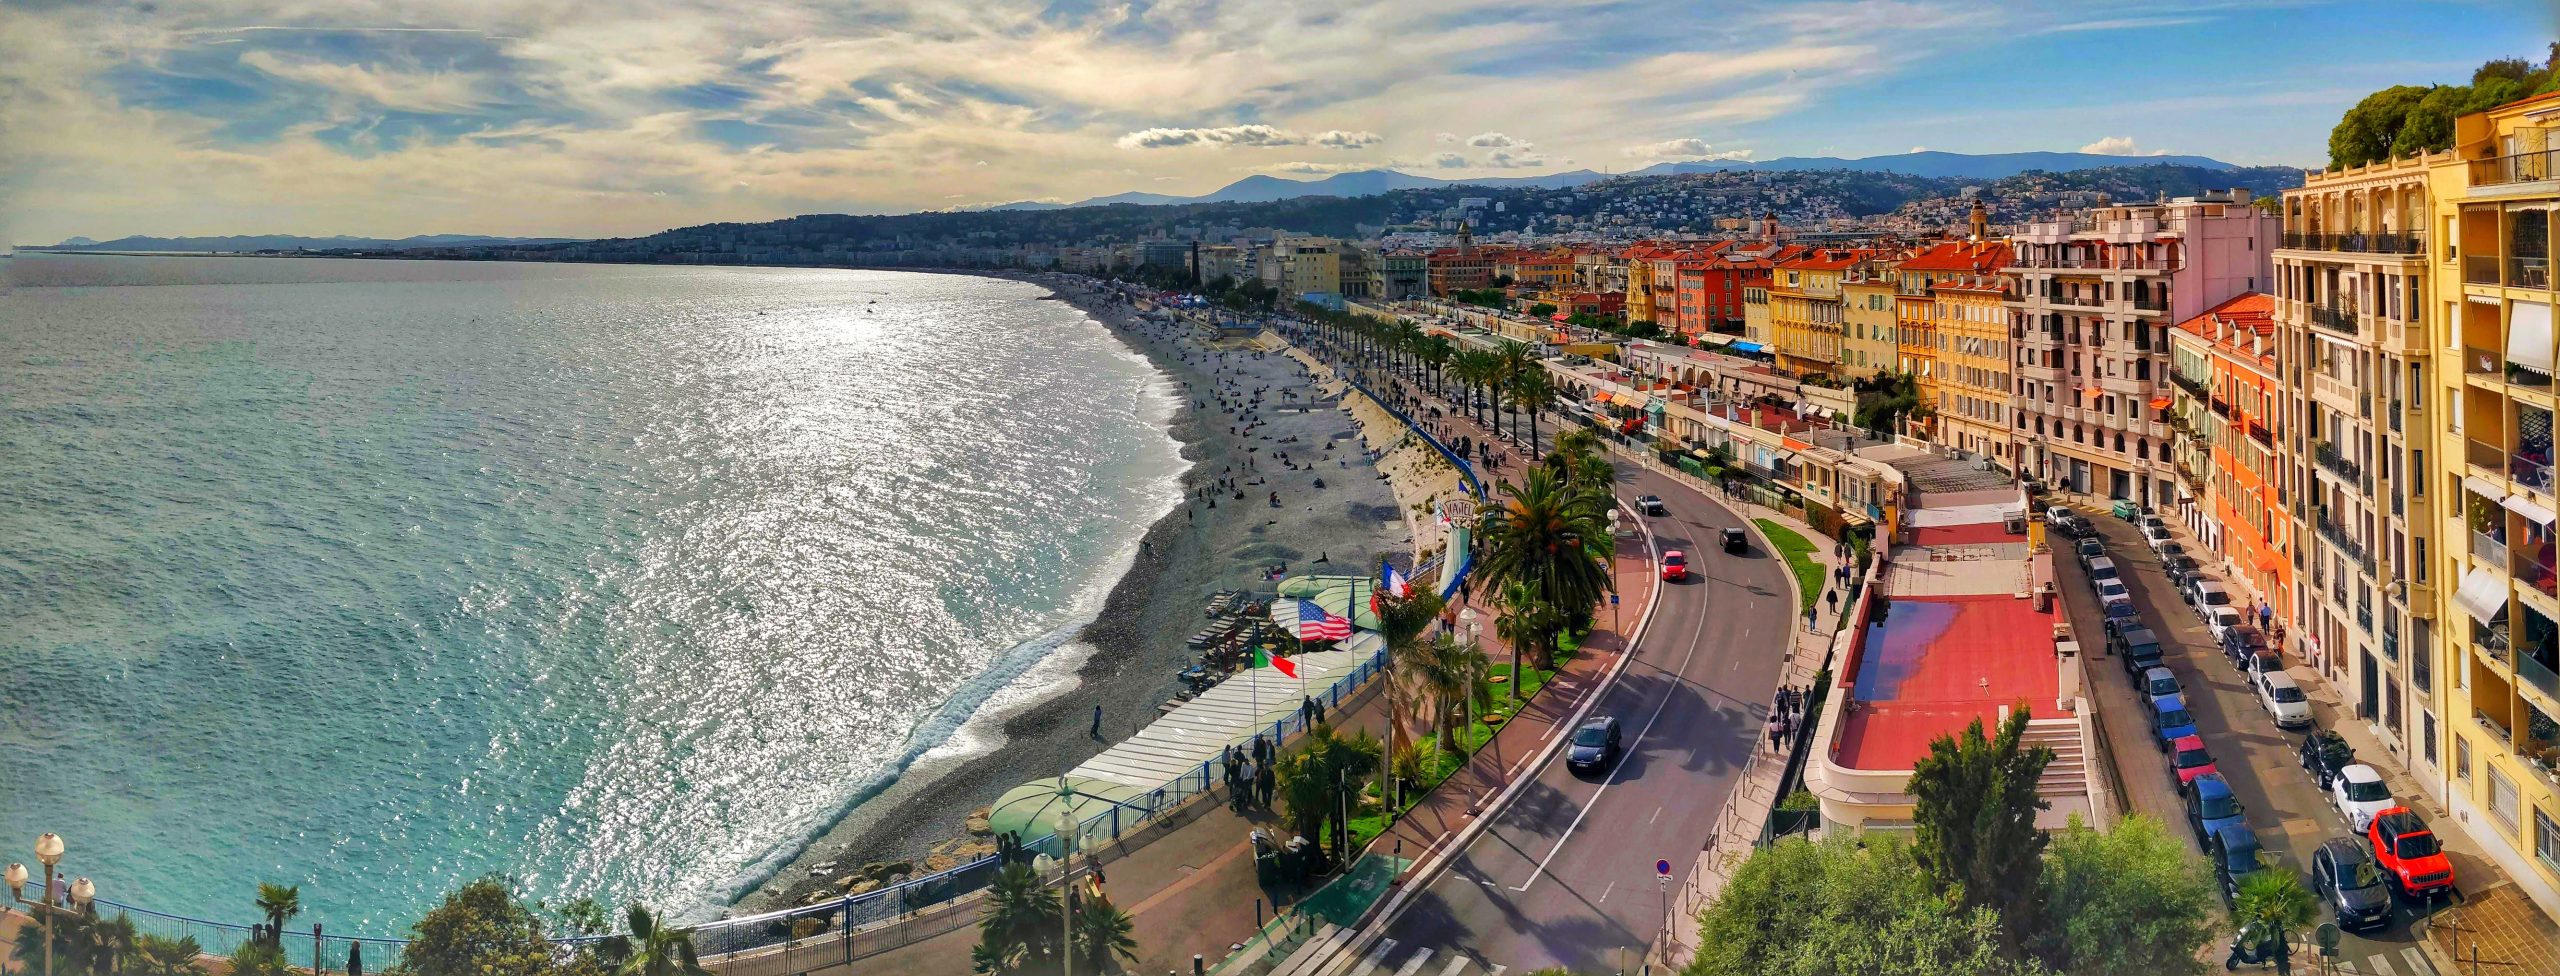 South Of France – Nice, France: Promenade De Anglais (Part 4/5)